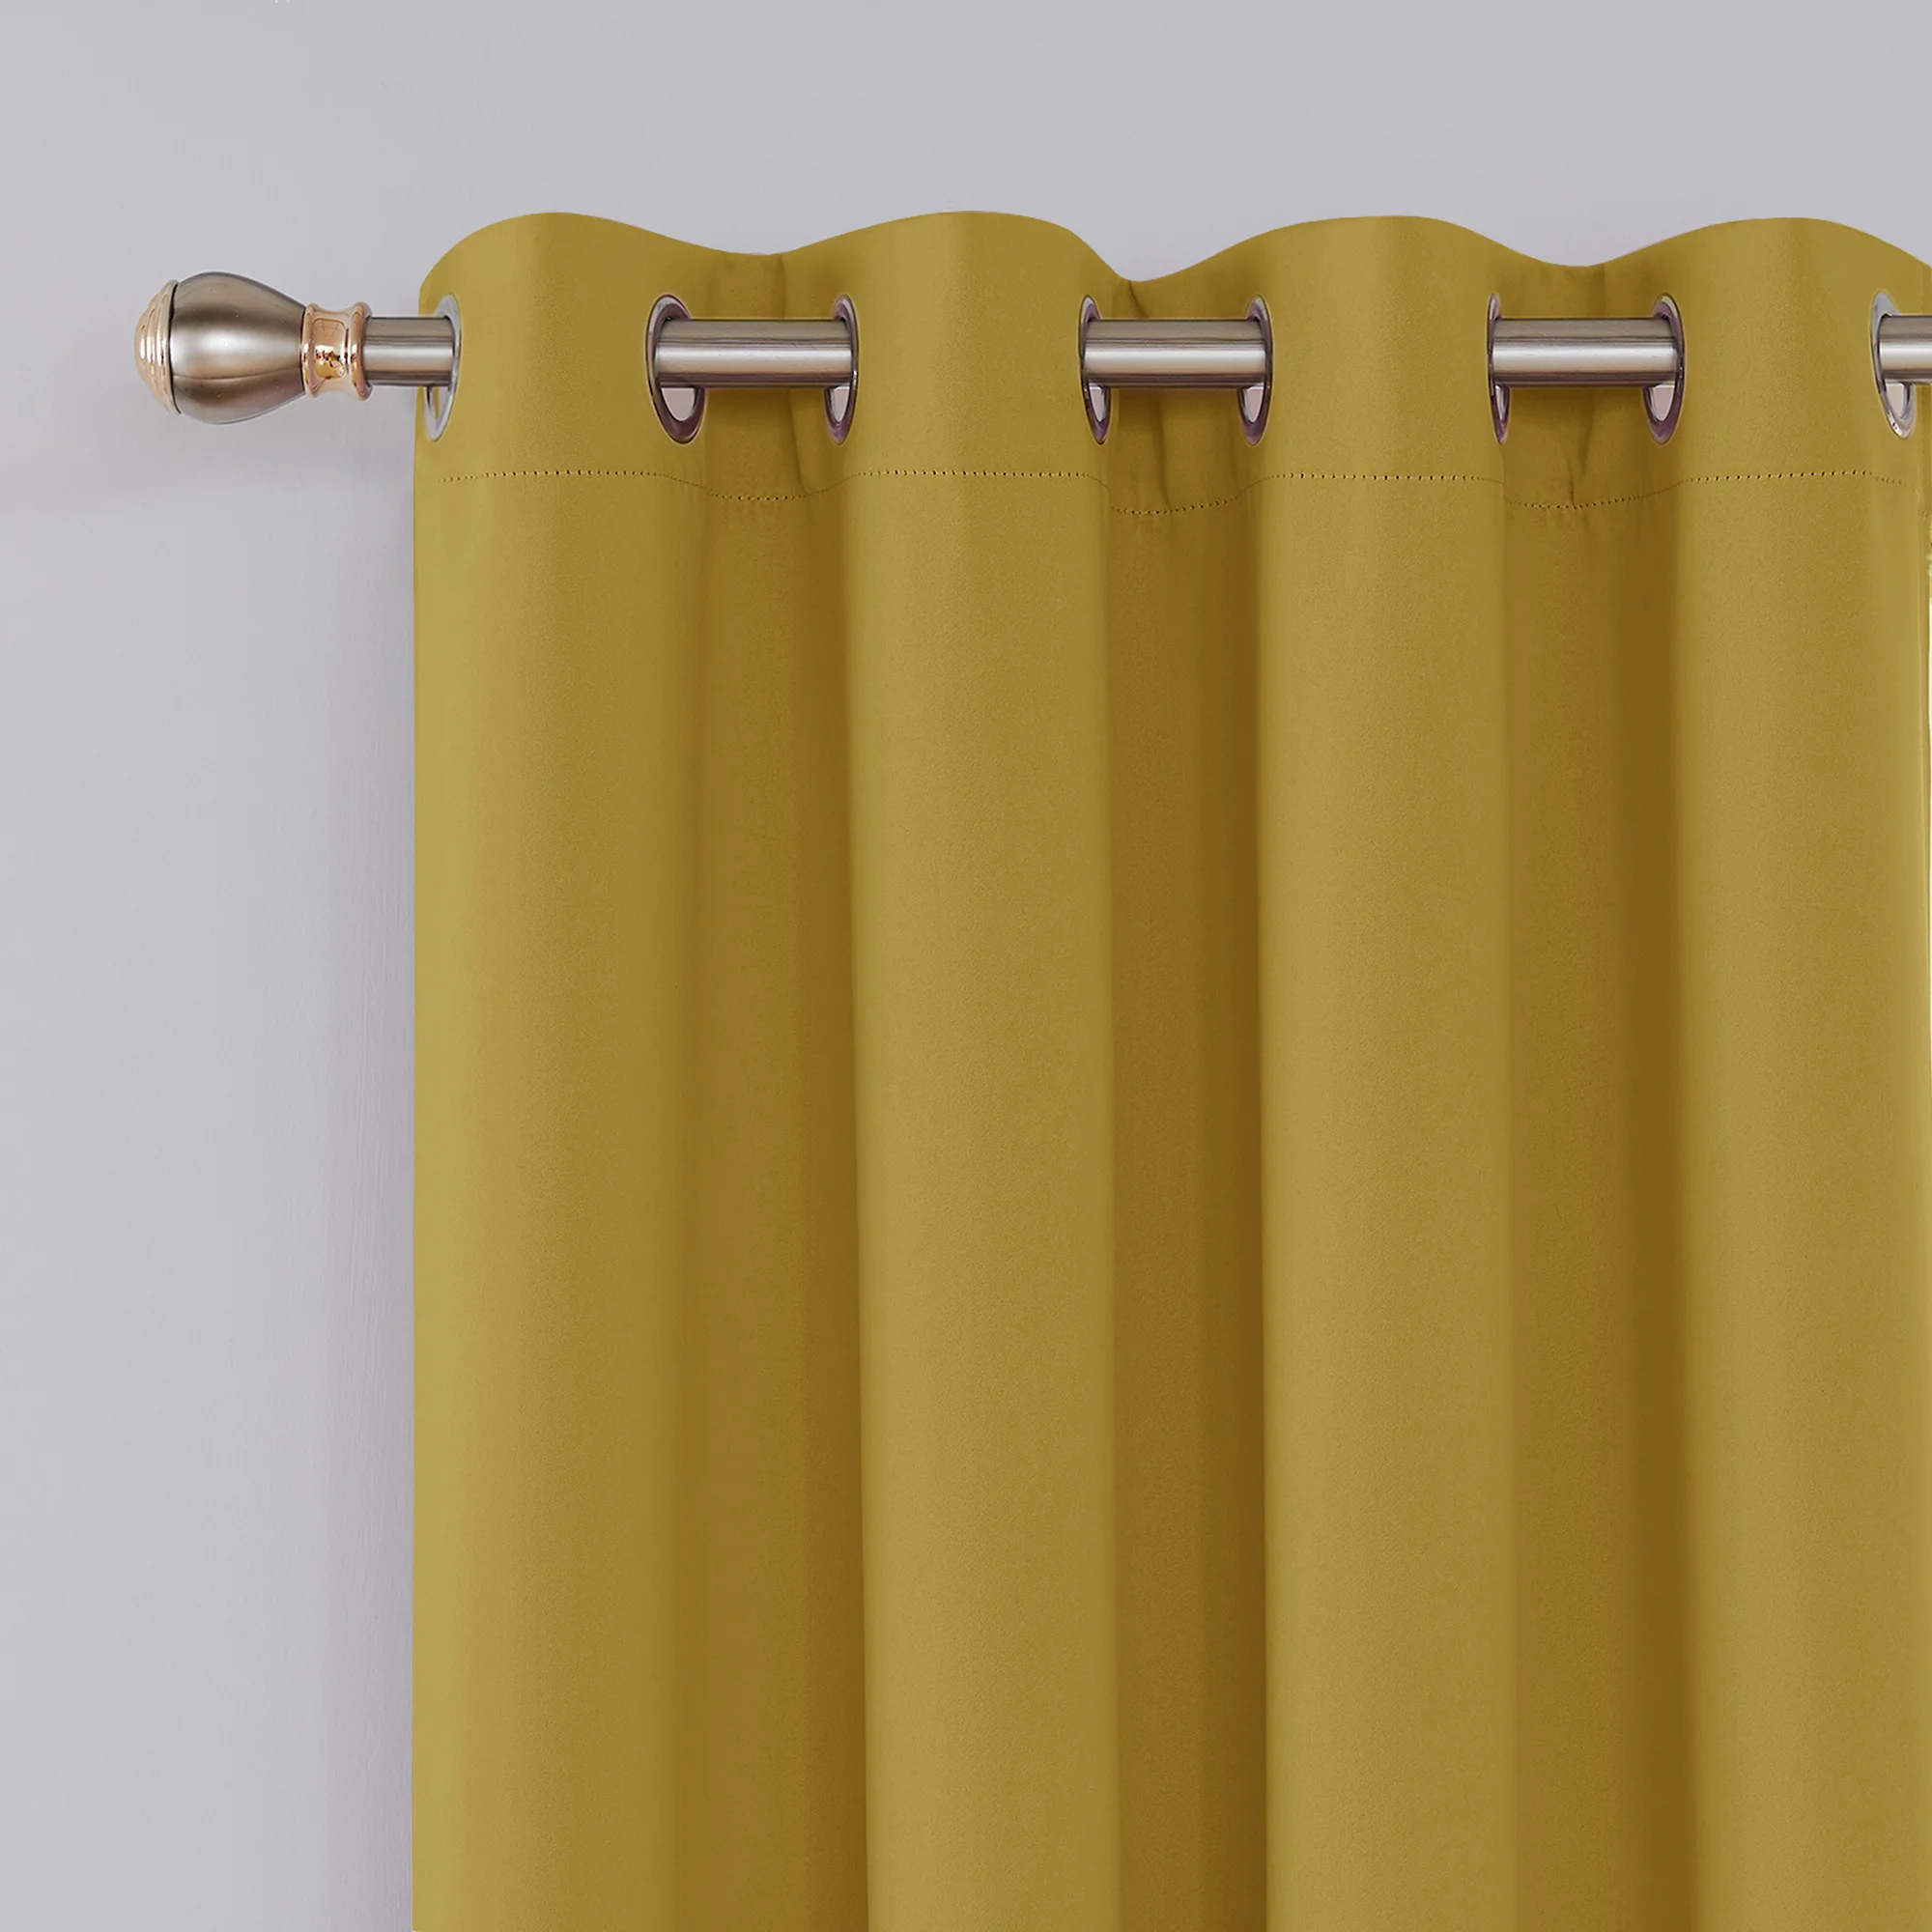 Style européen Jaune Lavage Thermique Isolé Tissu Occultant Rideaux pour Fenêtre Plafond Maison Salon Hôtels D'hôpital